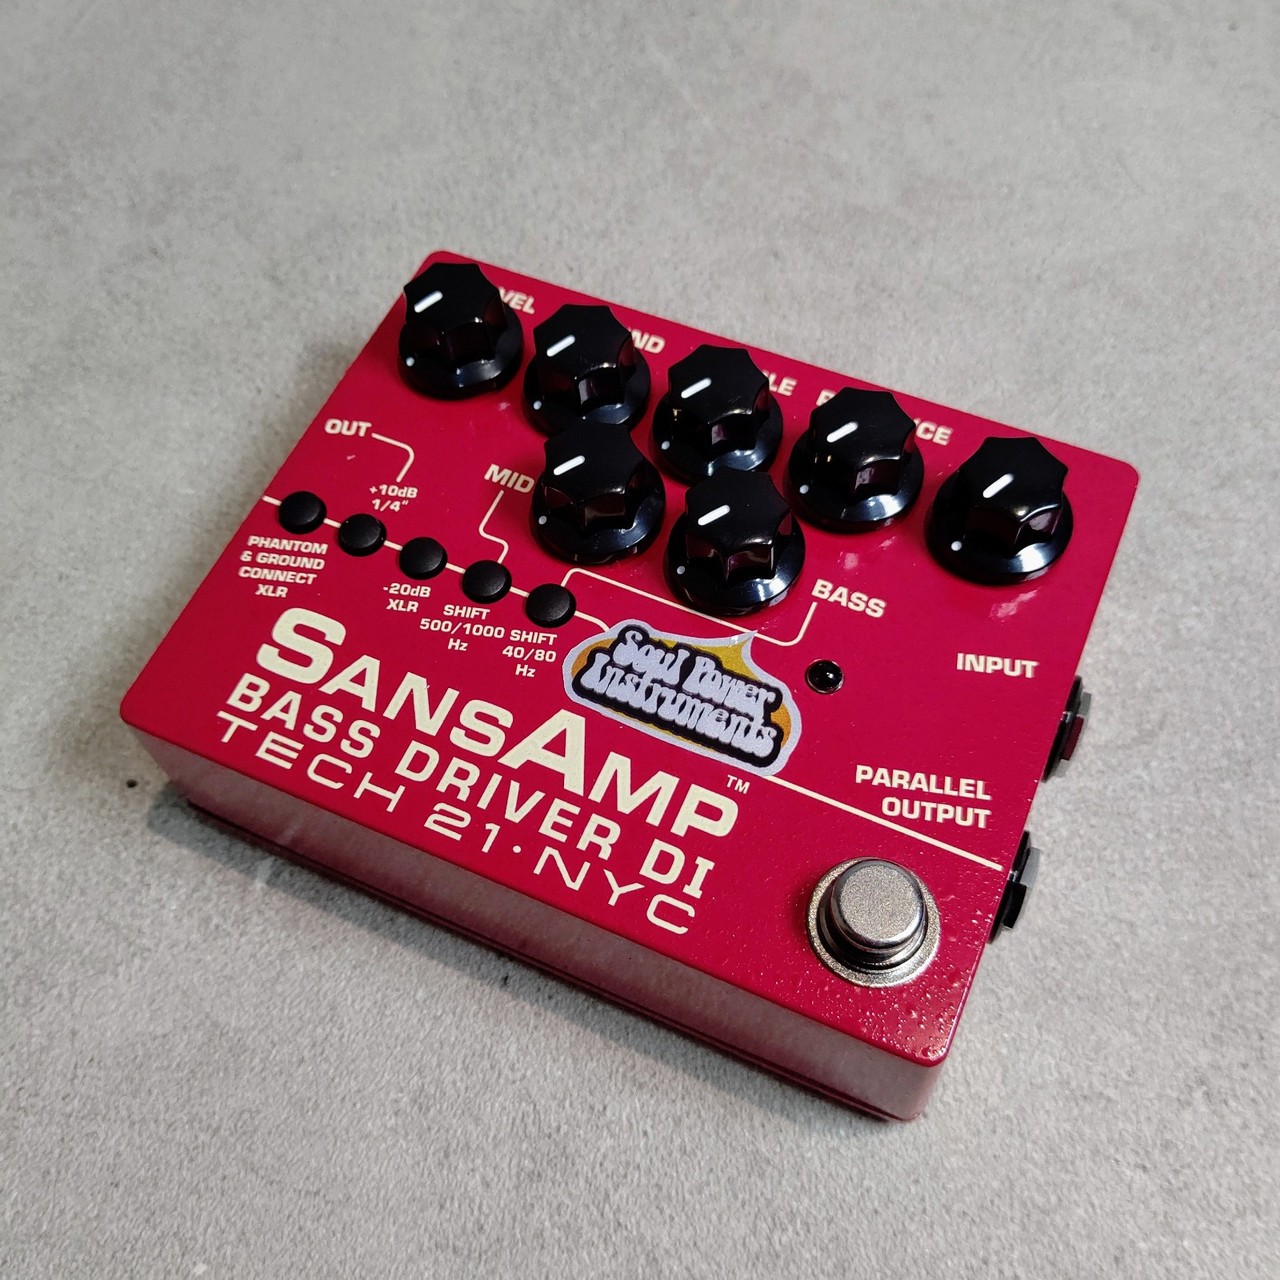 イケベ限定カラーの赤SANSAMP BASS DRIVER DI V2 VERMILLION 赤 - ギター